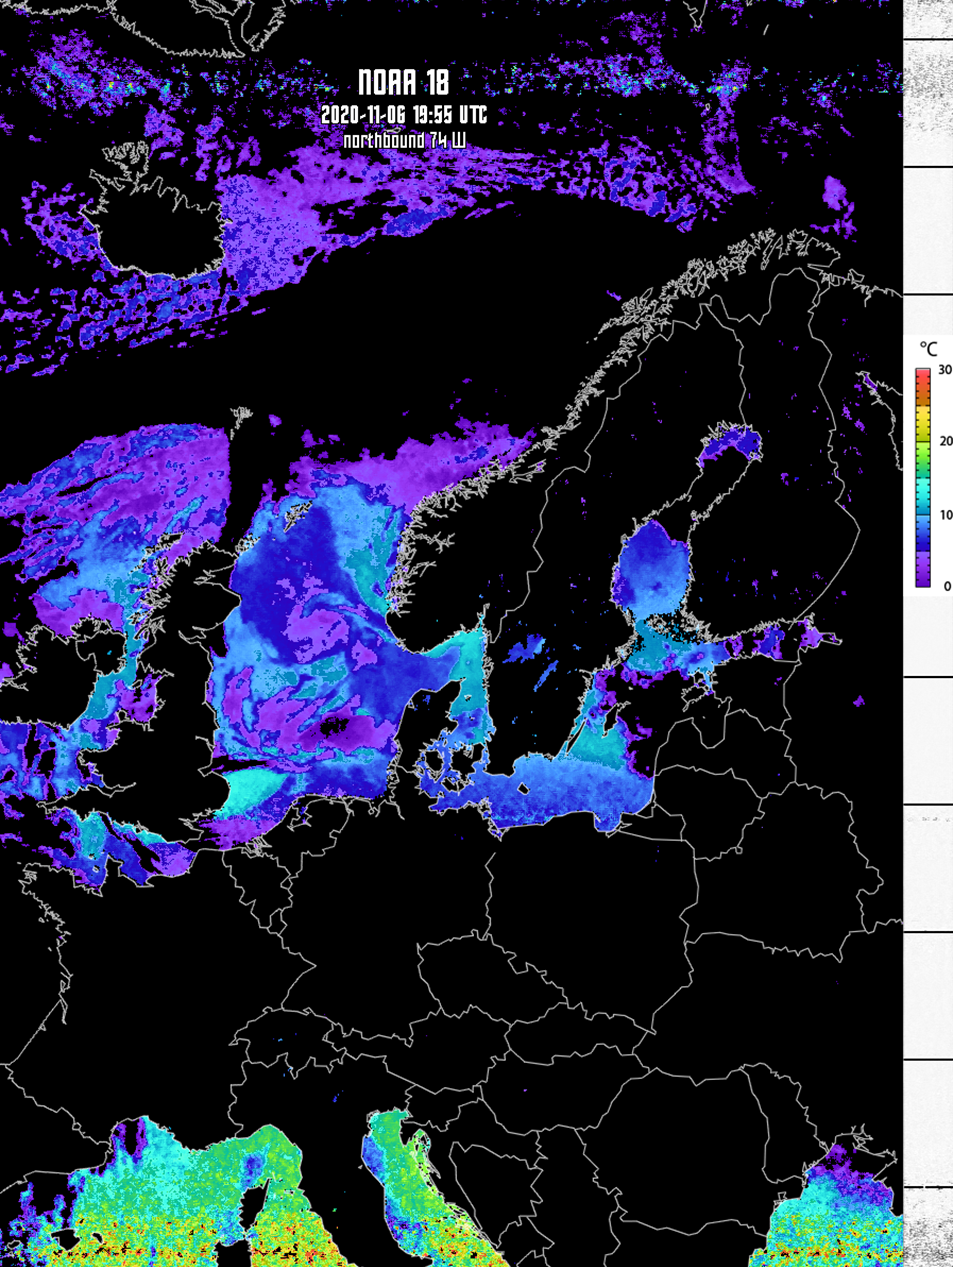 Behandlad vädersatellitbild från NOAA-18 som visar ytvattentemperatur (SST) i norra Europa. Svart är landmassa och molntäcke och färgerna representerar ytvattentemperatur som motsvarar skalan till höger. Foto: Vidar Petersson